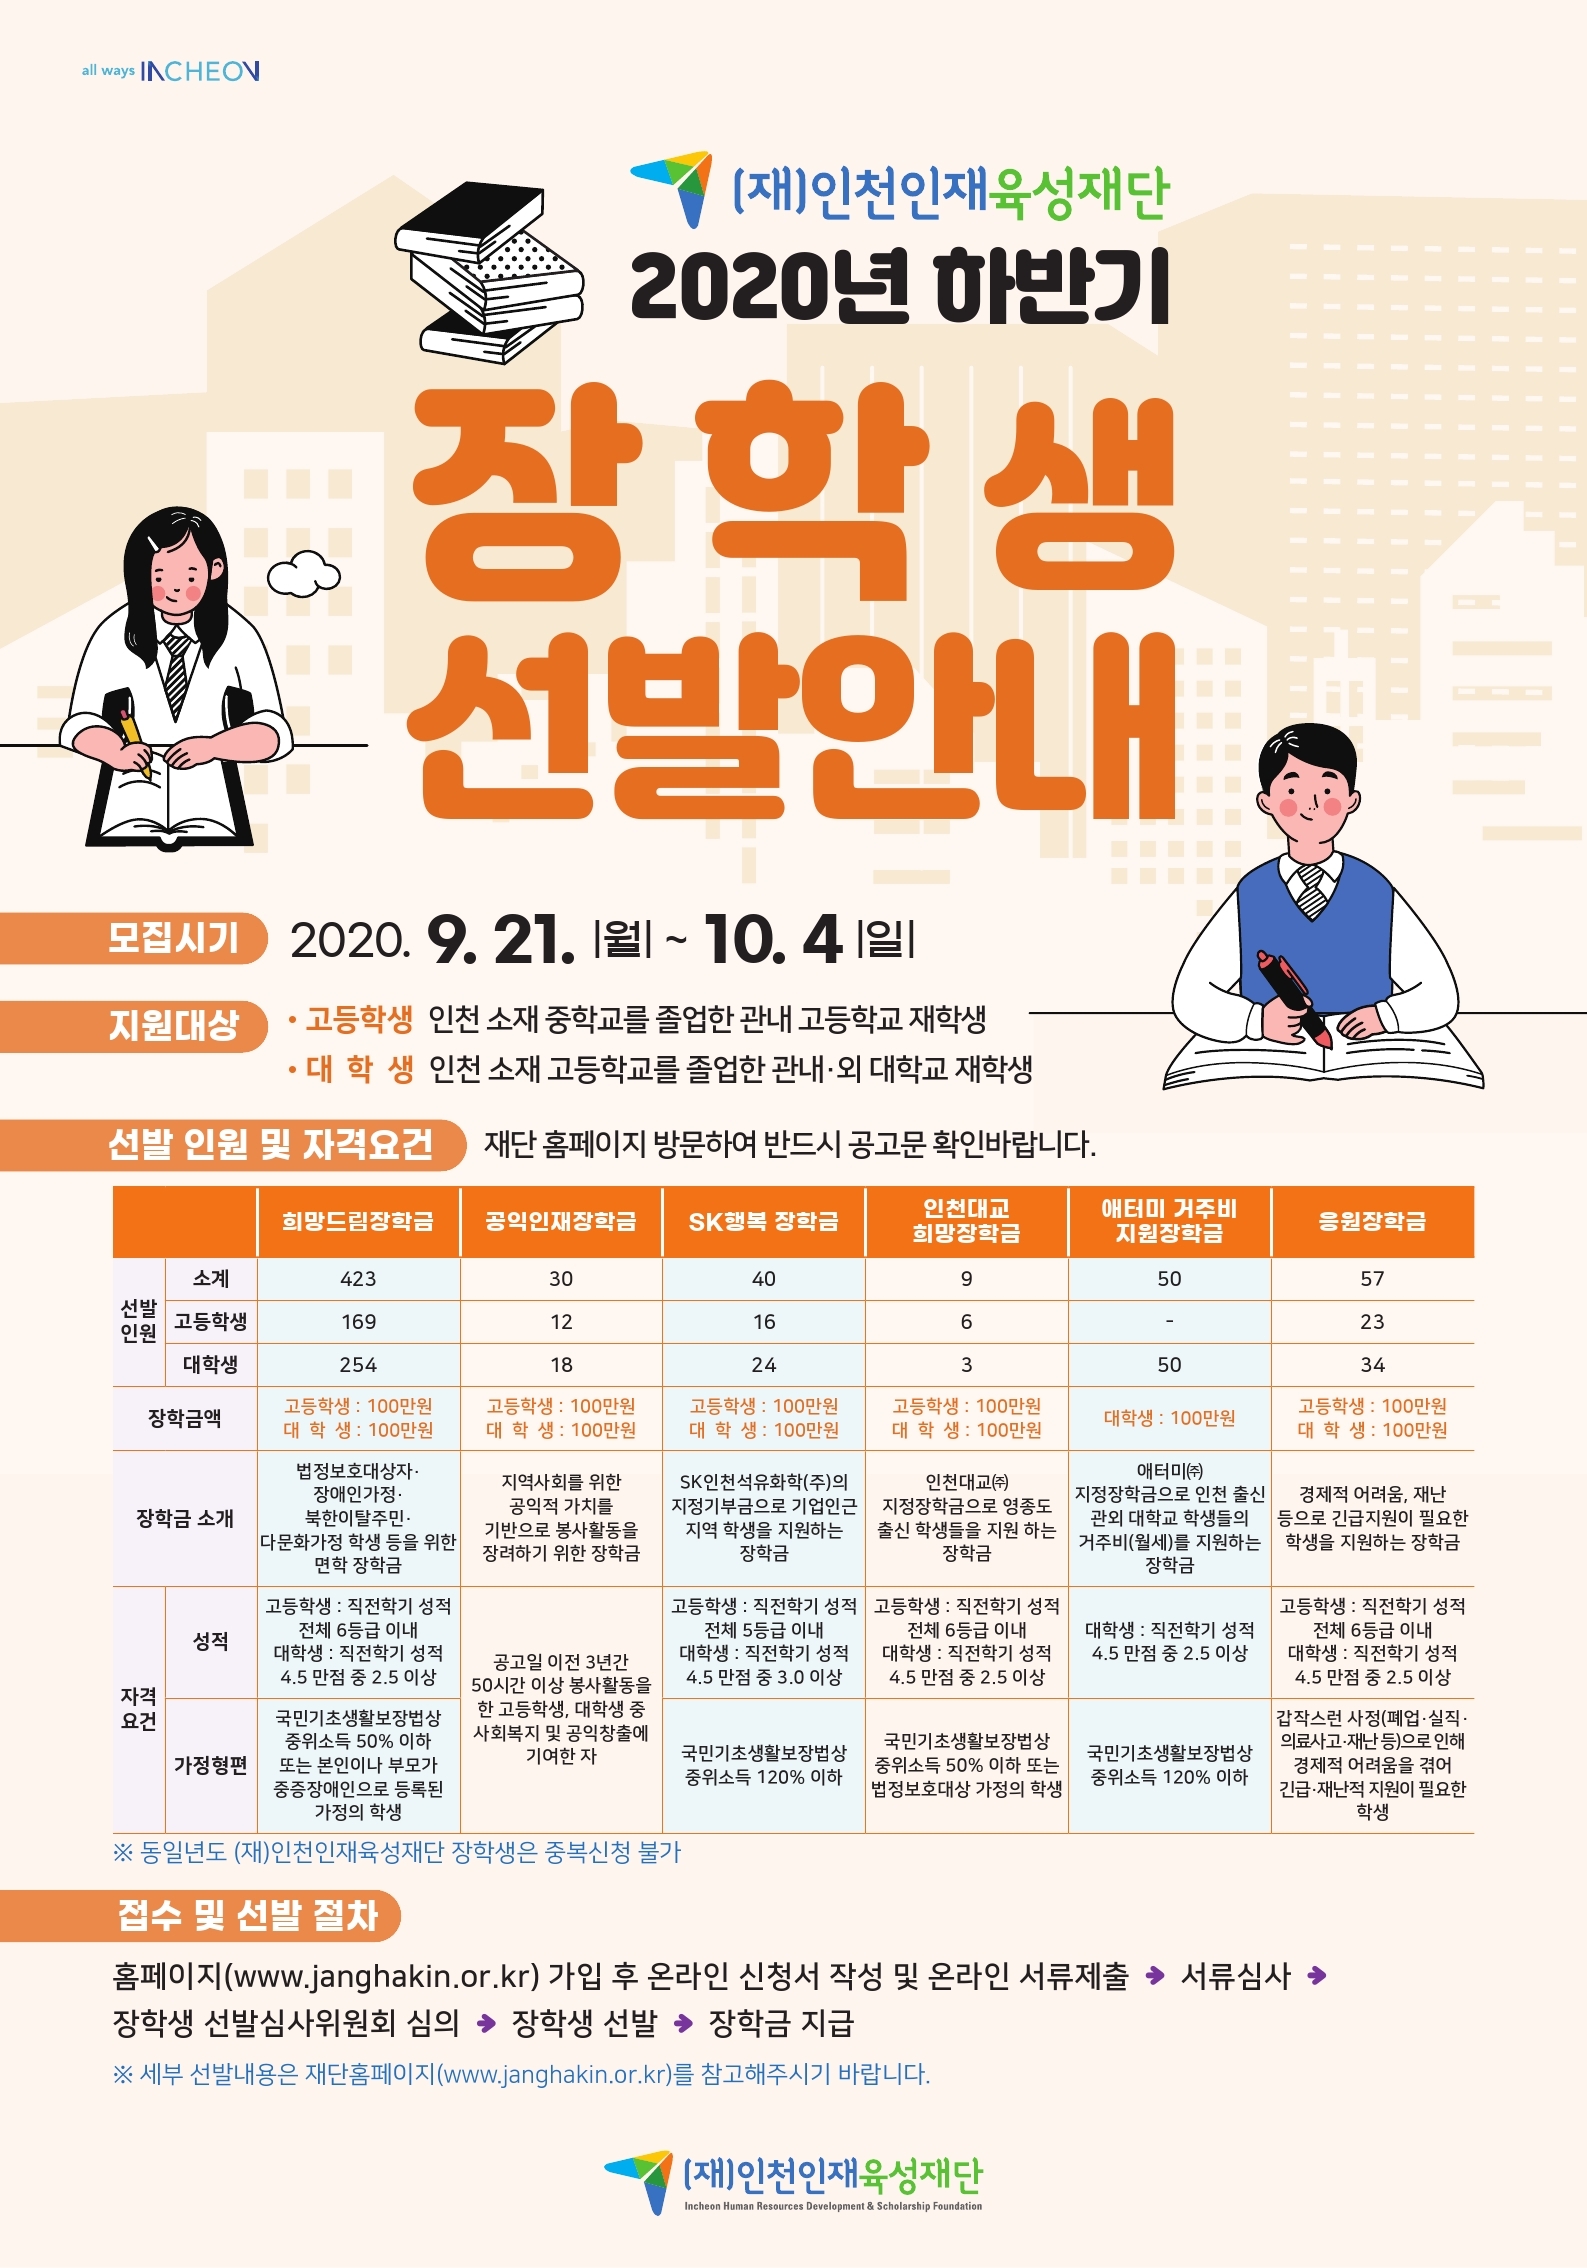 (재)인천인재육성재단은 인천 출신 학생에게 애향심 고취와 격려를 위해 2020년도 하반기 장학생을 선발하고자 합니다